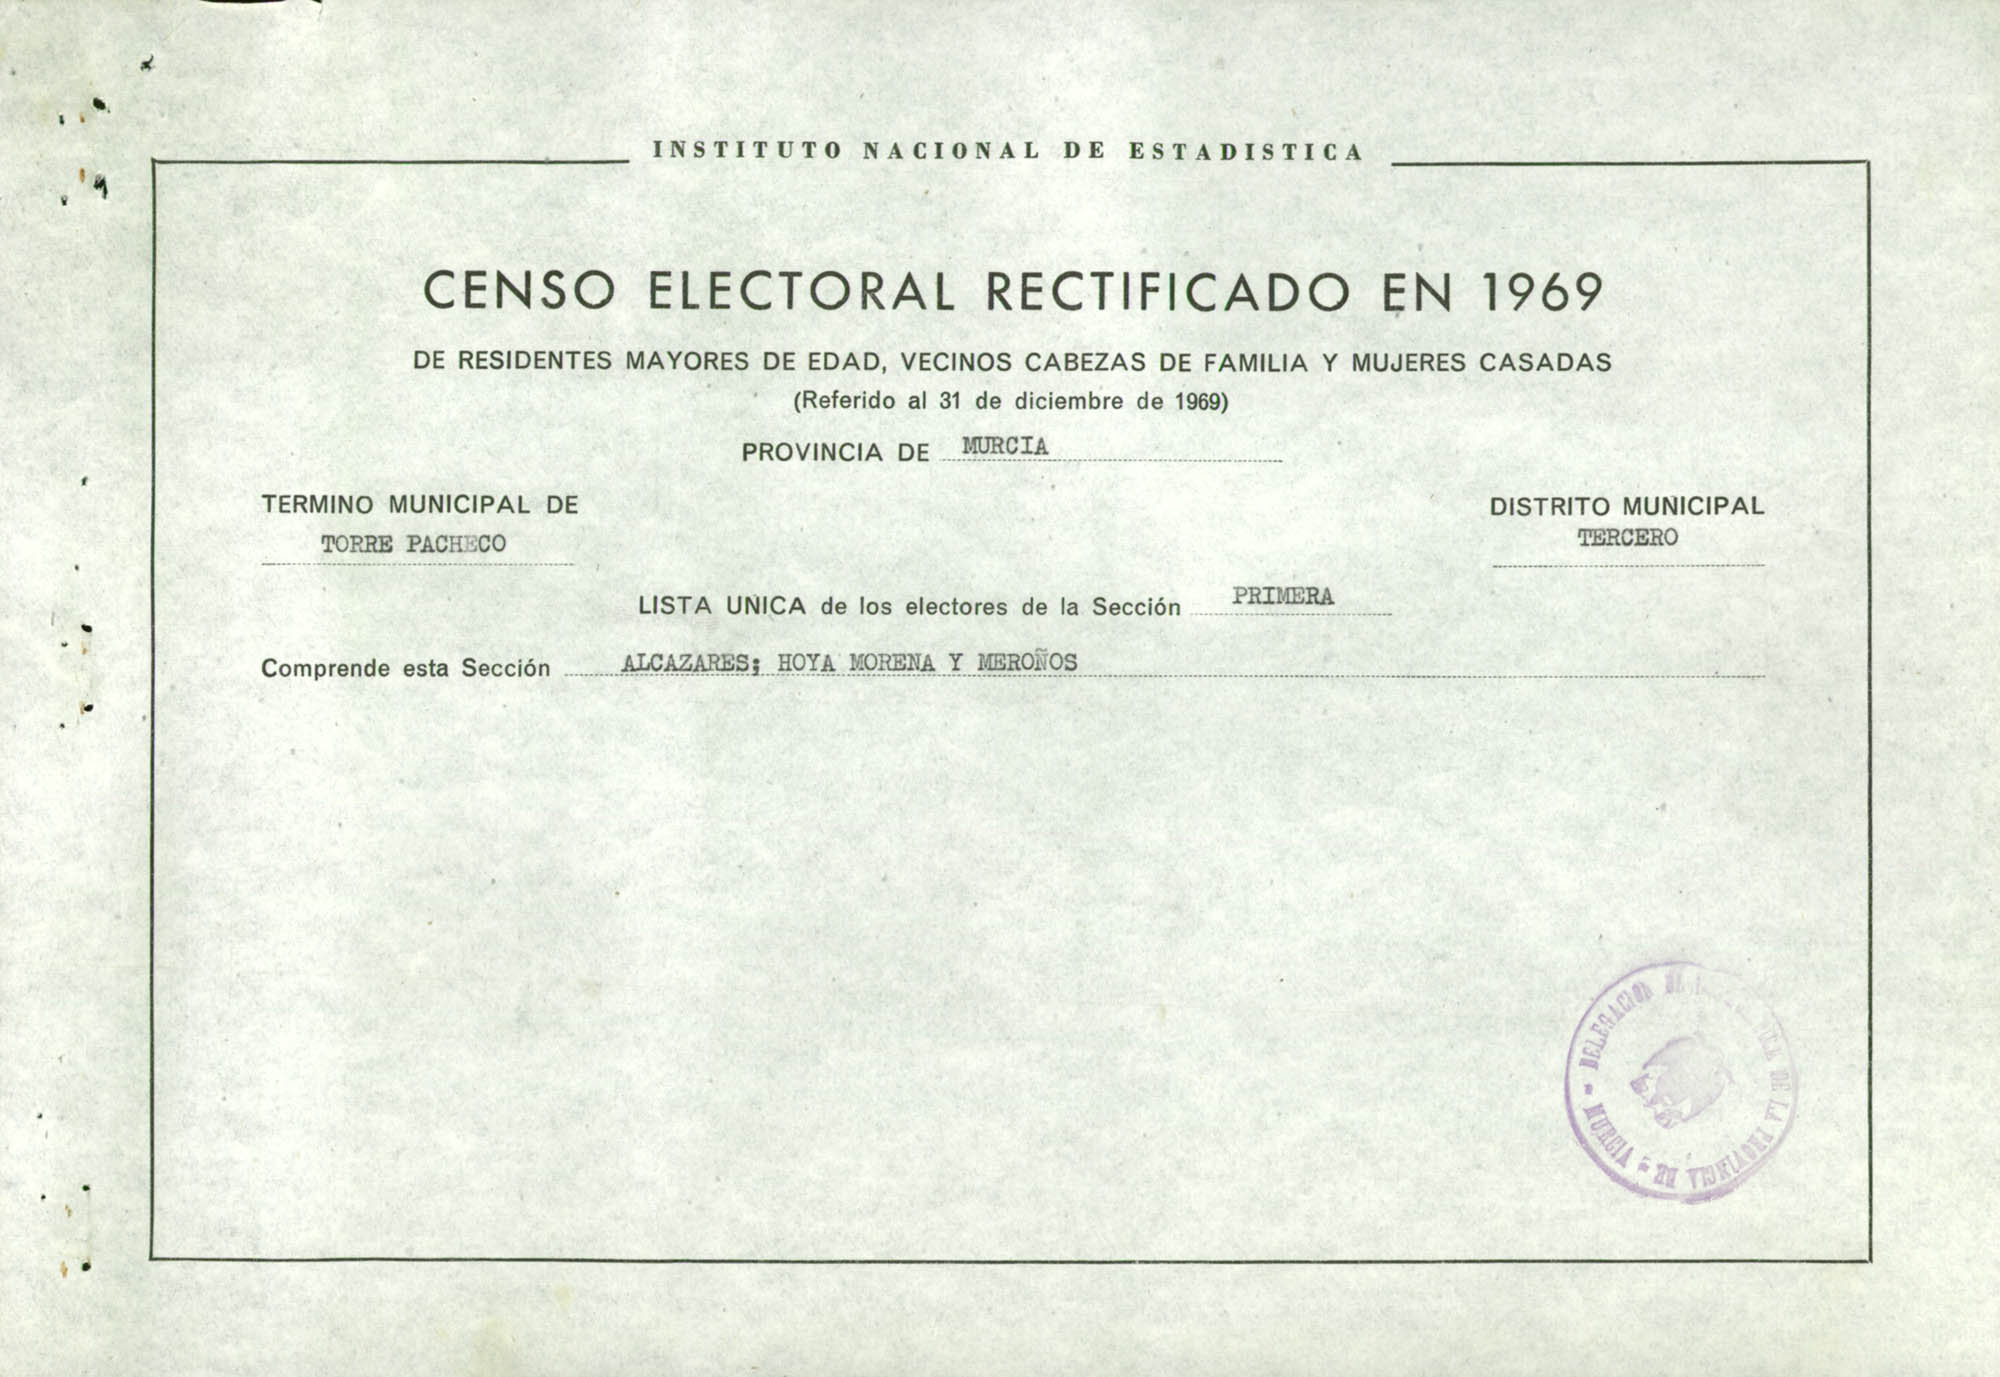 Censo electoral rectificado en 1969: listas definitivas de Torre Pacheco, Distrito 3º, sección 2ª.